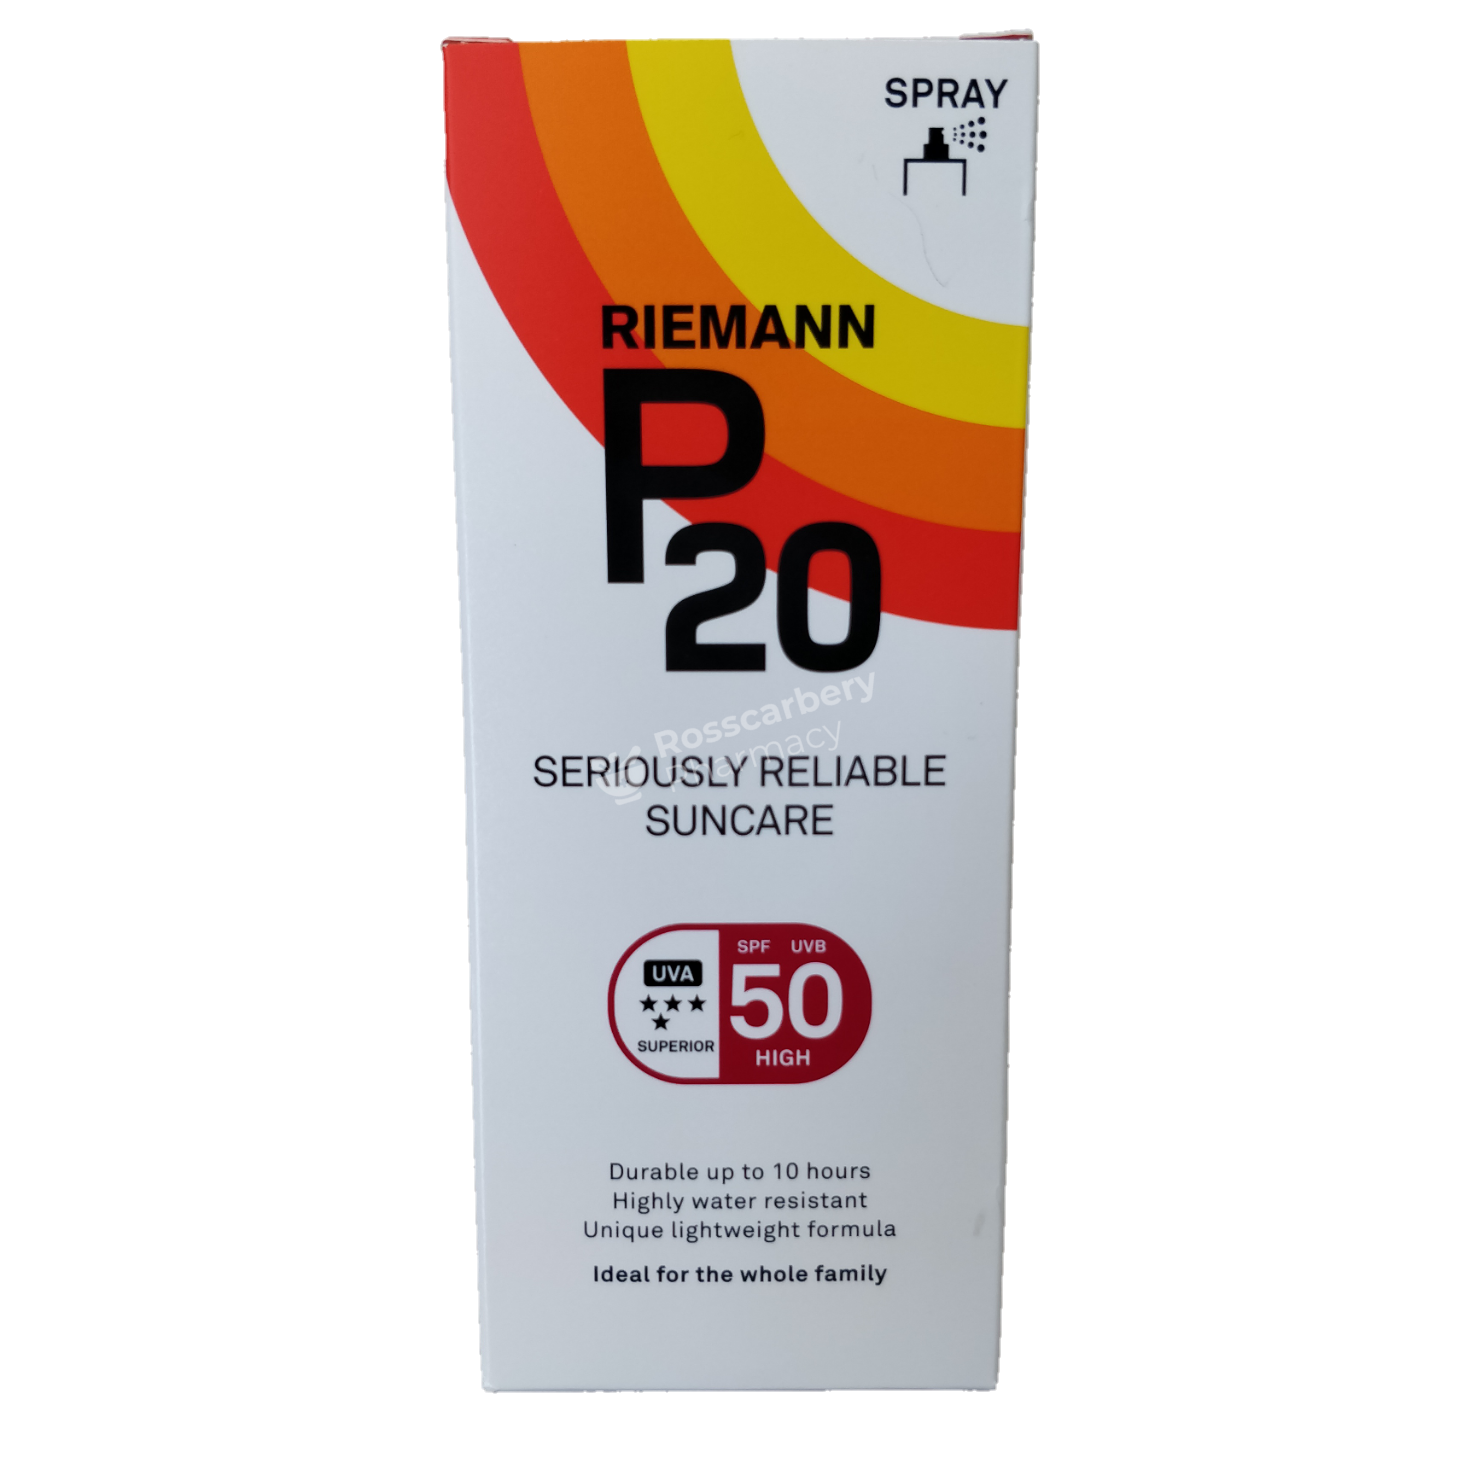 RIEMANN P20 Spray SPF50 High